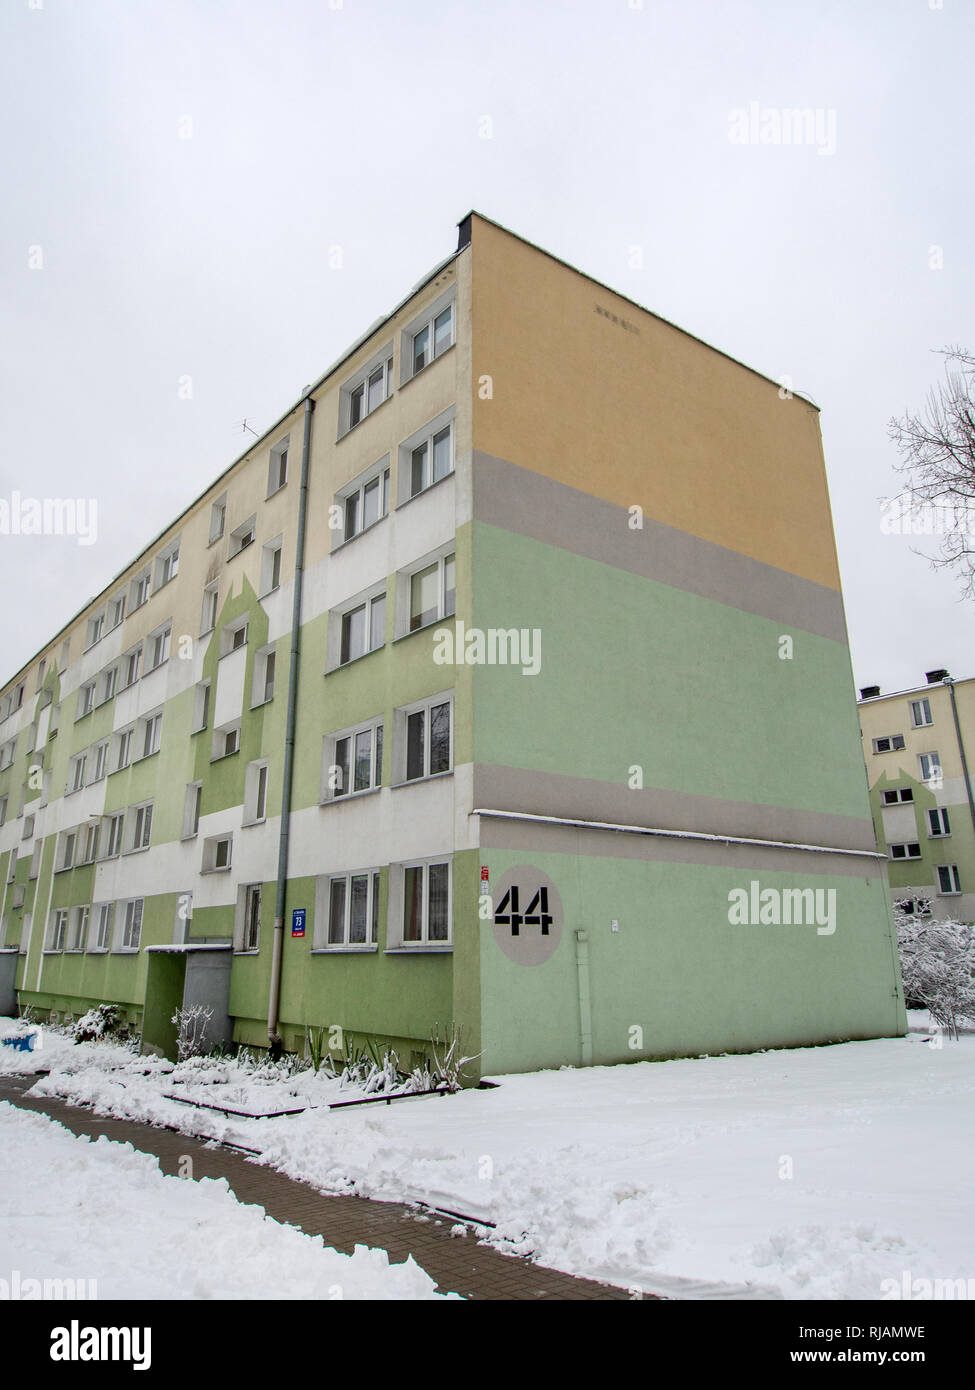 LODZ, Polonia- 4 de febrero de 2019: un colorido edificio de apartamentos en Lodz. Foto de stock